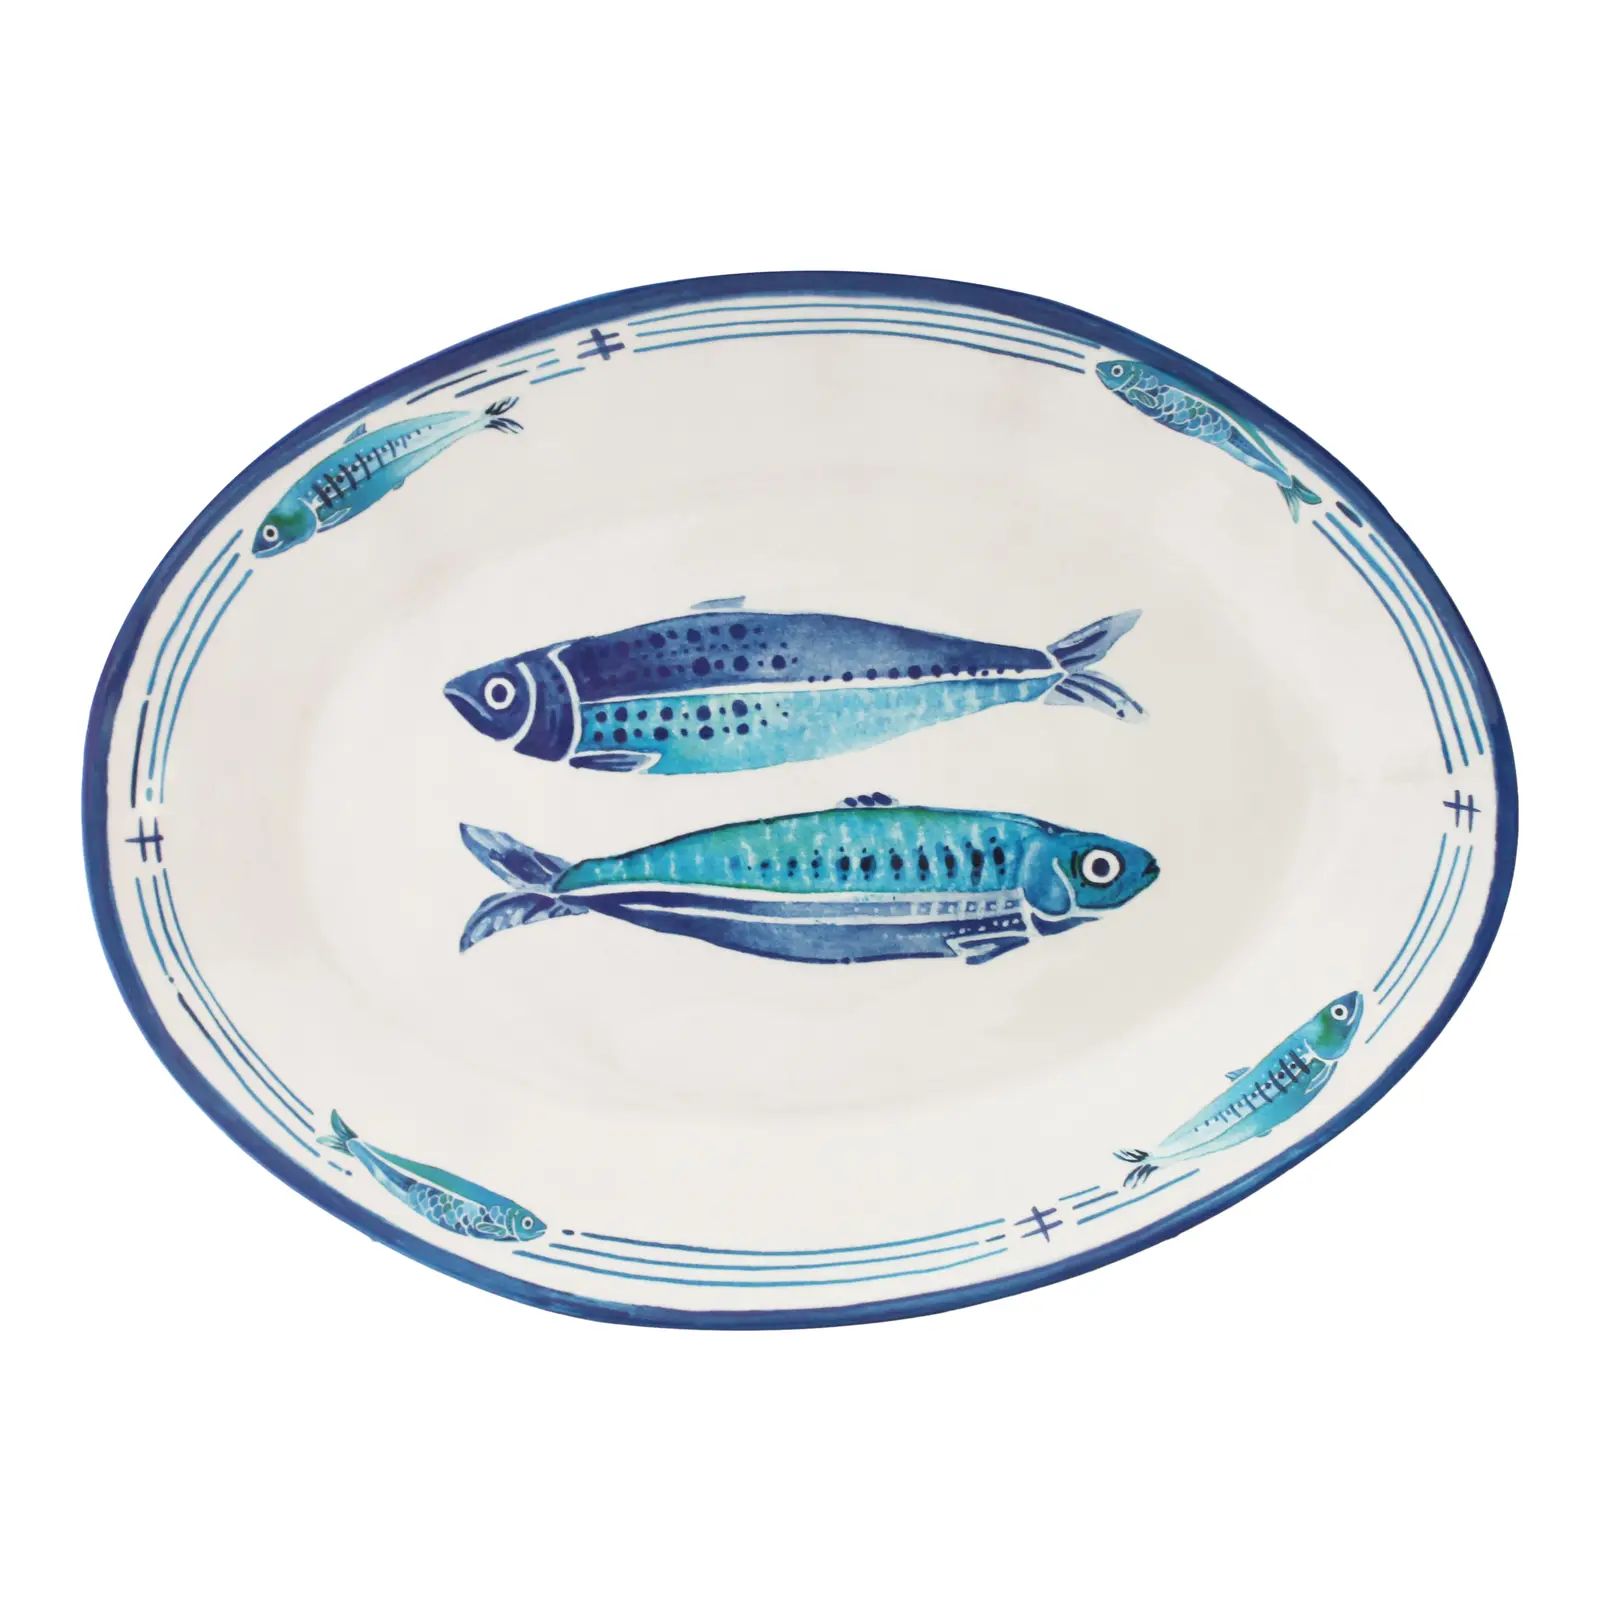 Santorini 16" Melamine Oval Platter, Set of 2 | Chairish